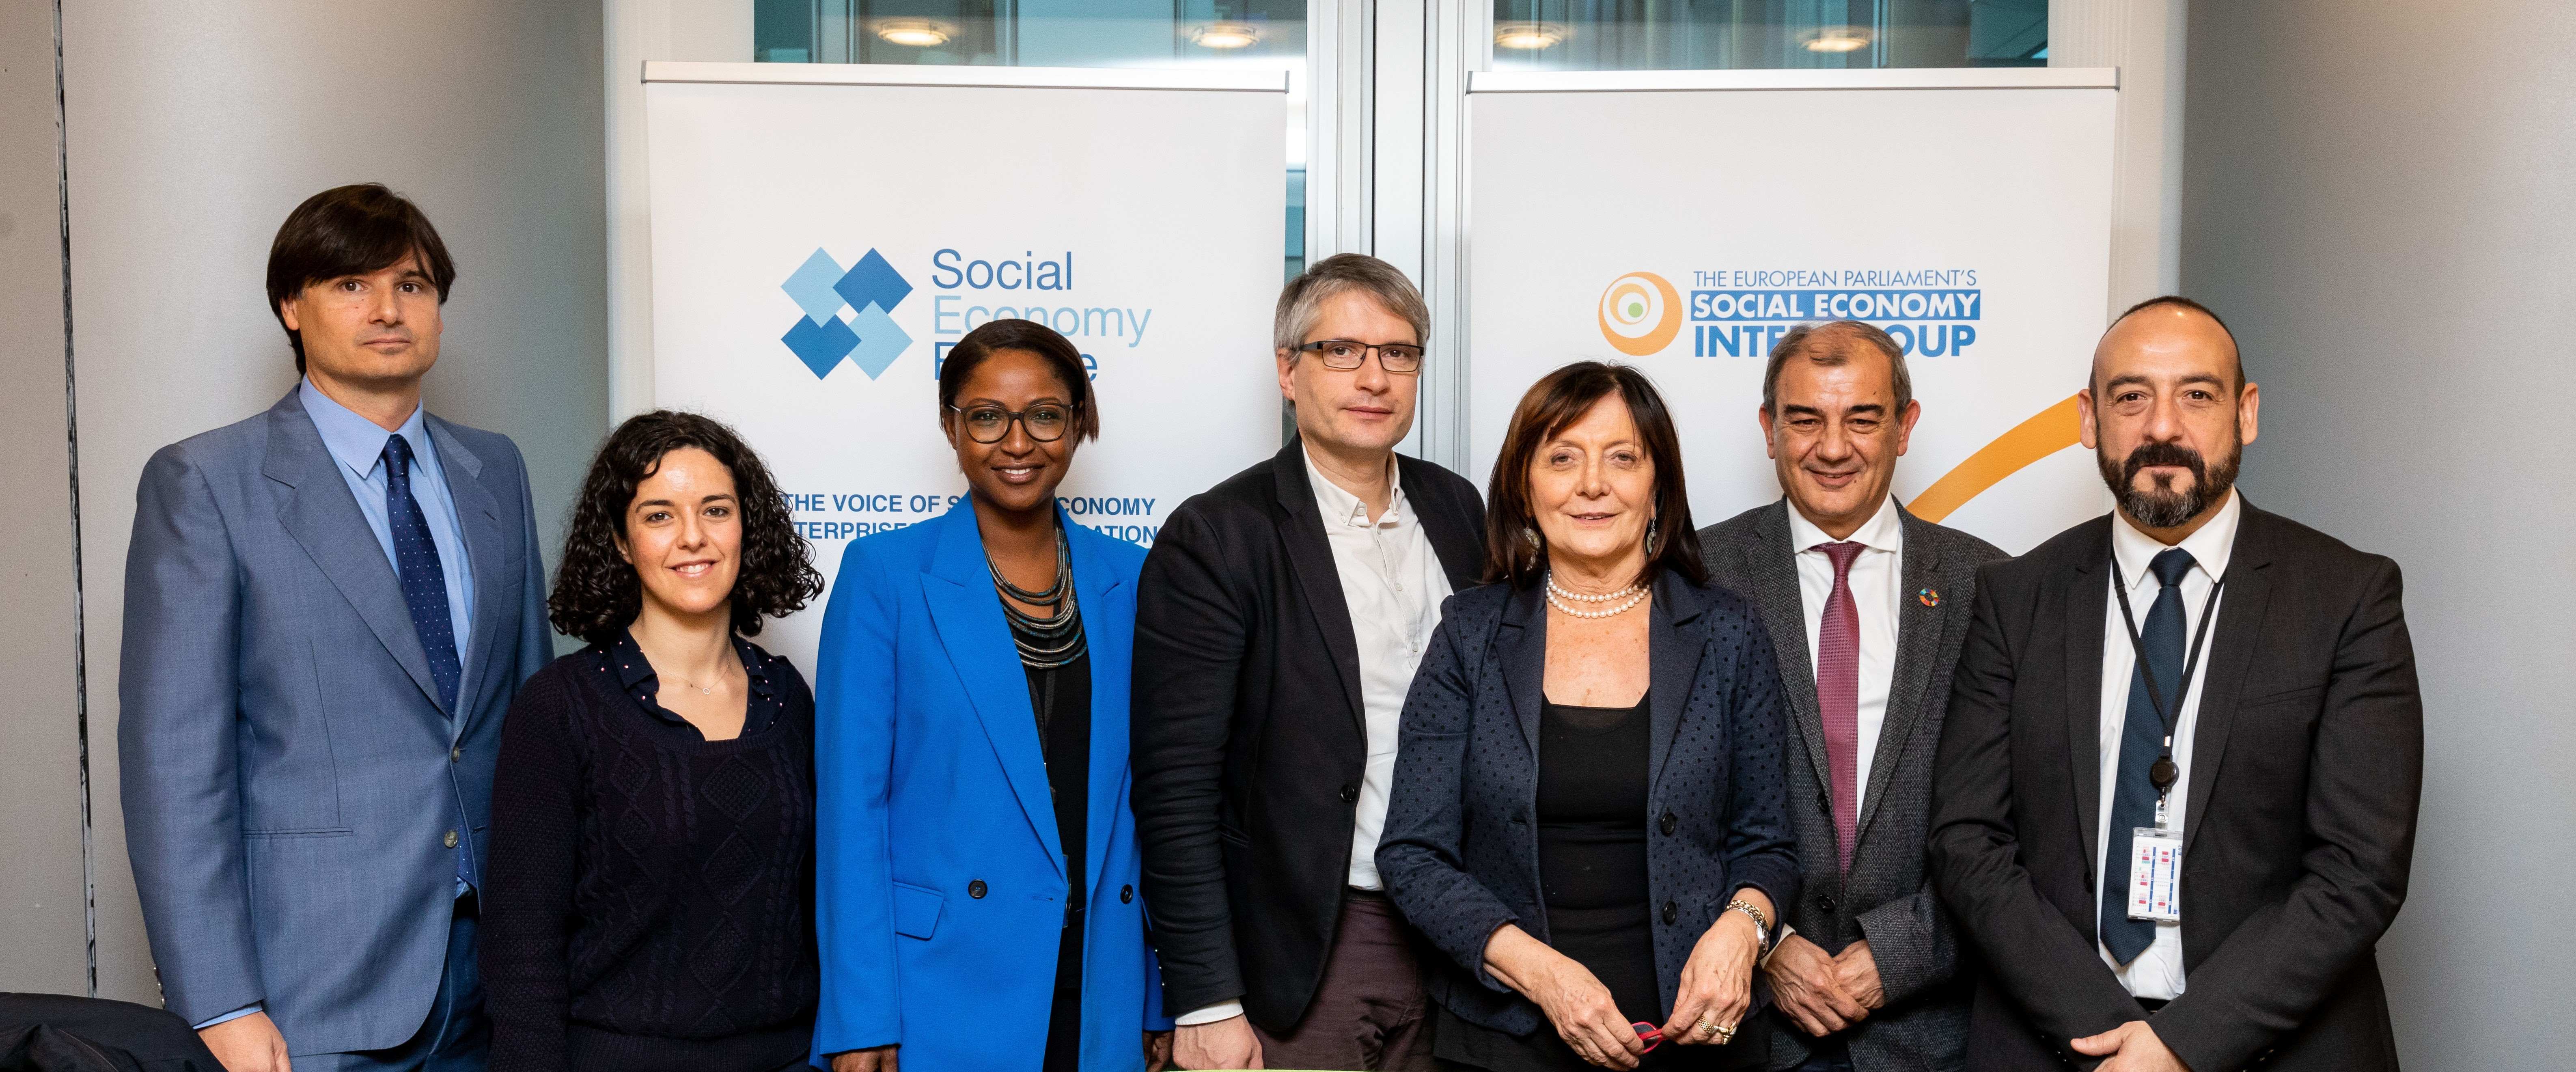 El Intergrupo de Economía Social del Parlamento Europeo renovado